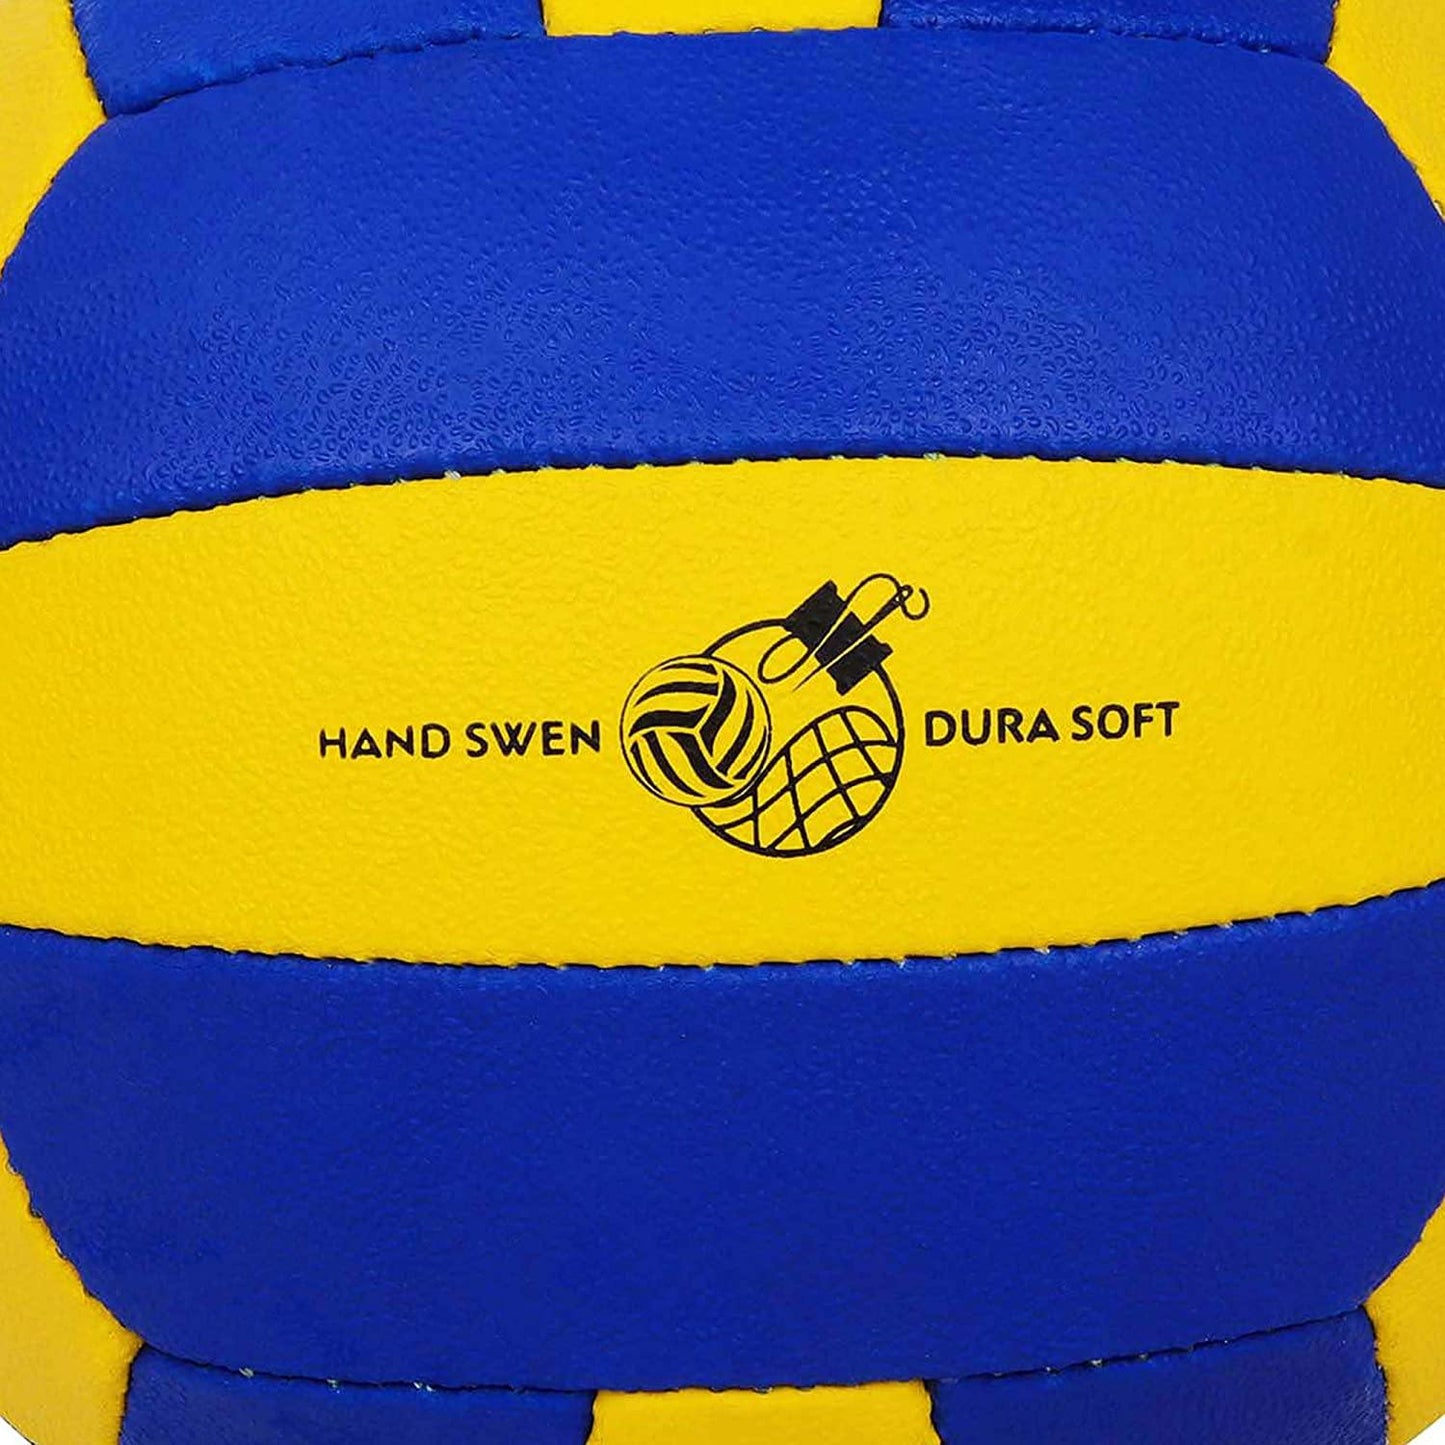 Cosco Striker Volley Ball, Size 4 - Best Price online Prokicksports.com